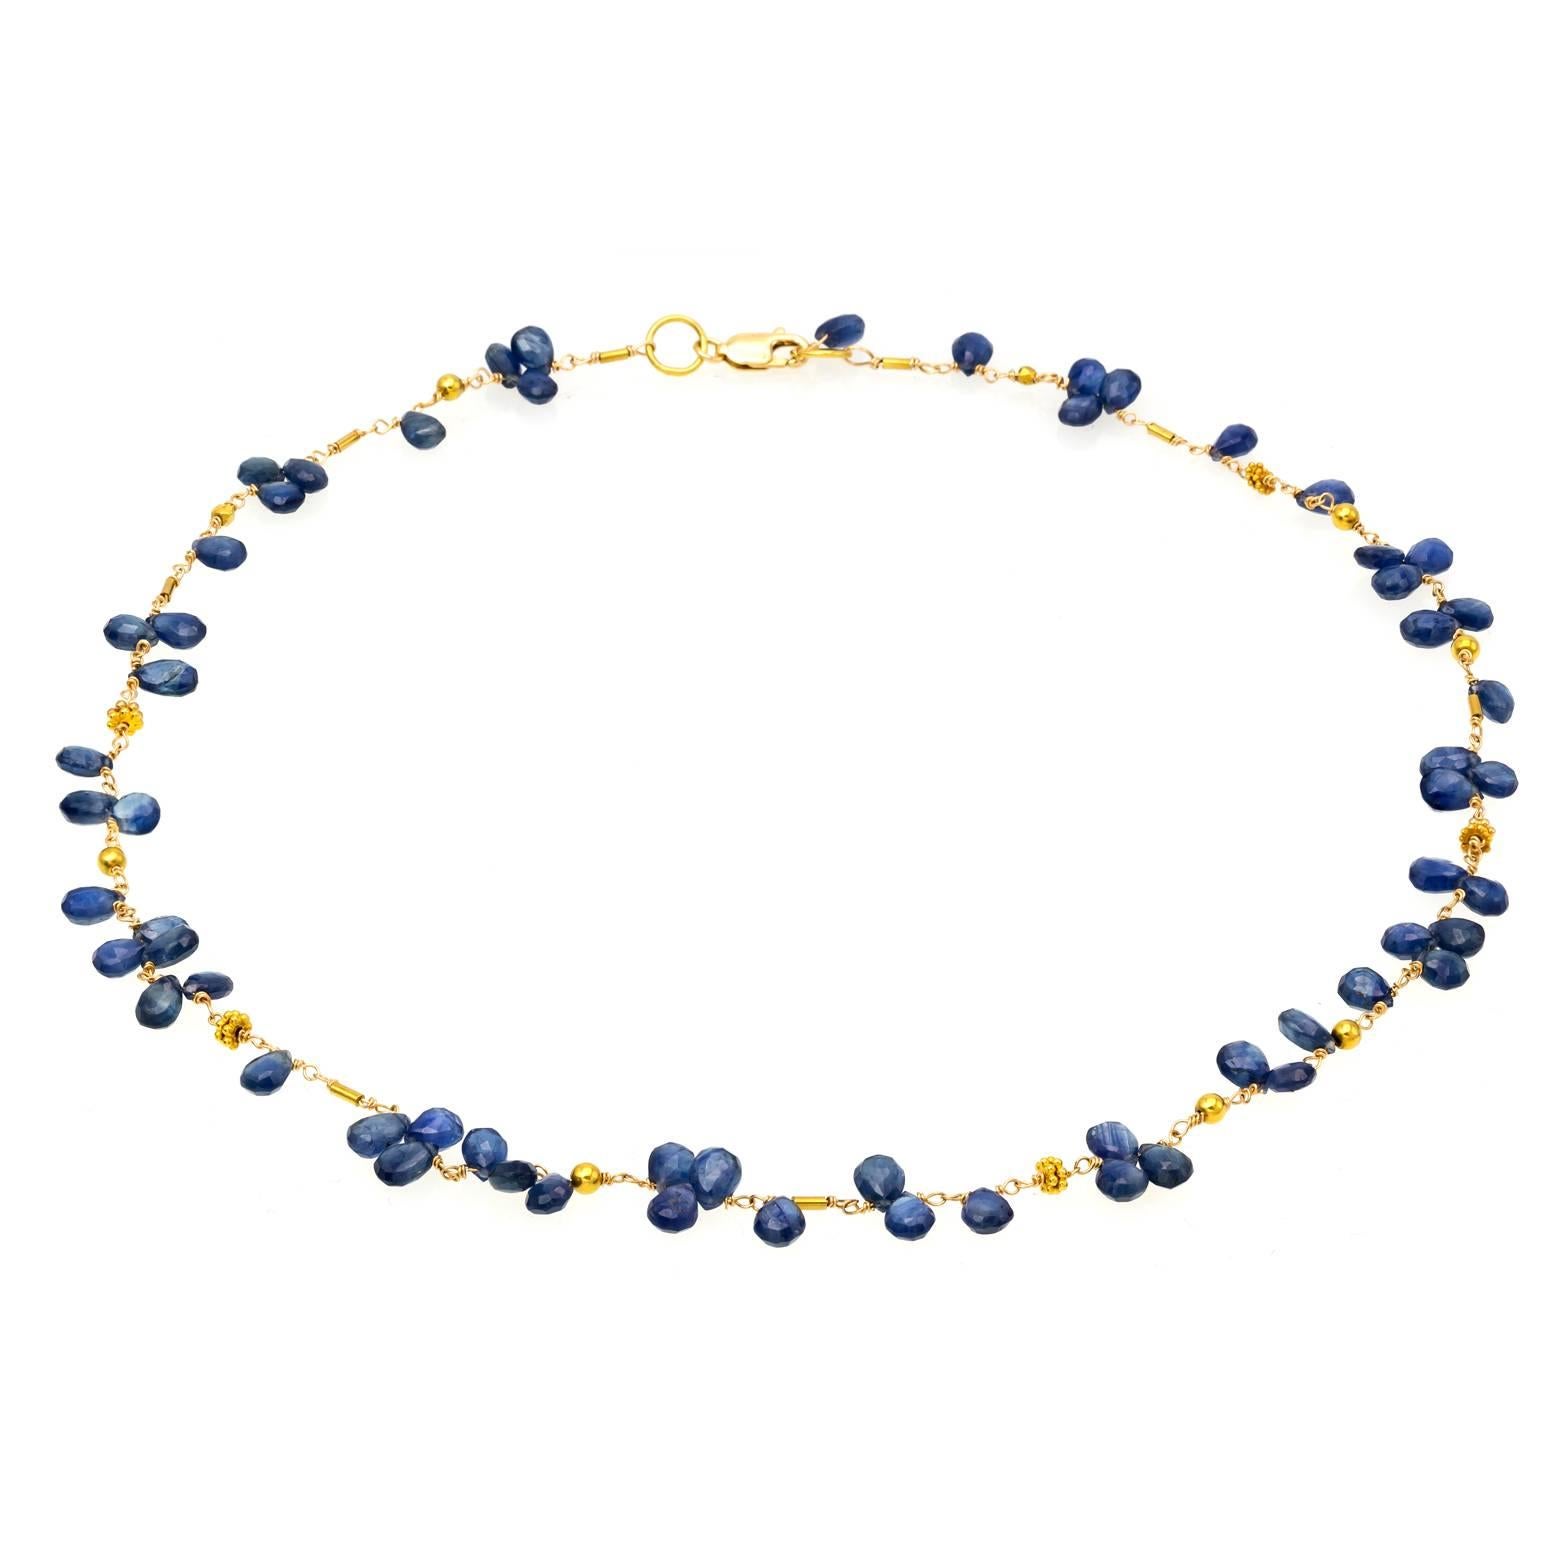 72 facettierte blaue Saphirbrillanten sorgen für einen zarten und femininen Look mit Perlen und Kette aus 18 Karat Gelbgold. Die blauen Saphirperlen sehen aus wie Blütenblätter, die entlang eines glänzenden, goldenen Weges aufgereiht sind.